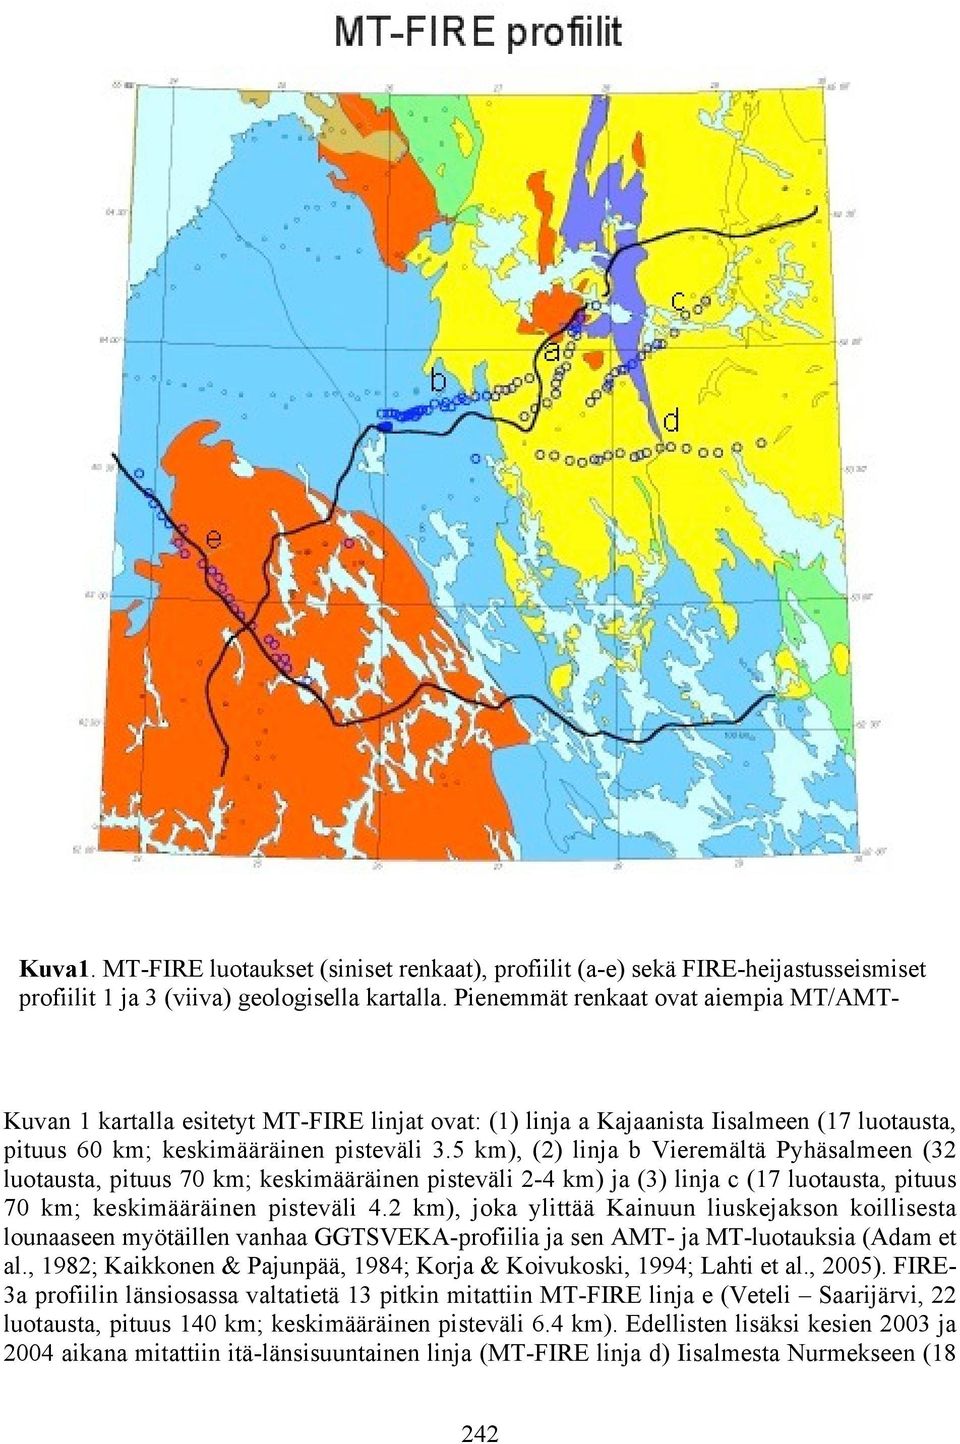 Kuvan 1 kartalla esitetyt MT-FIRE linjat ovat: (1) linja a Kajaanista Iisalmeen (17 luotausta, pituus 60 km; keskimääräinen pisteväli 3.